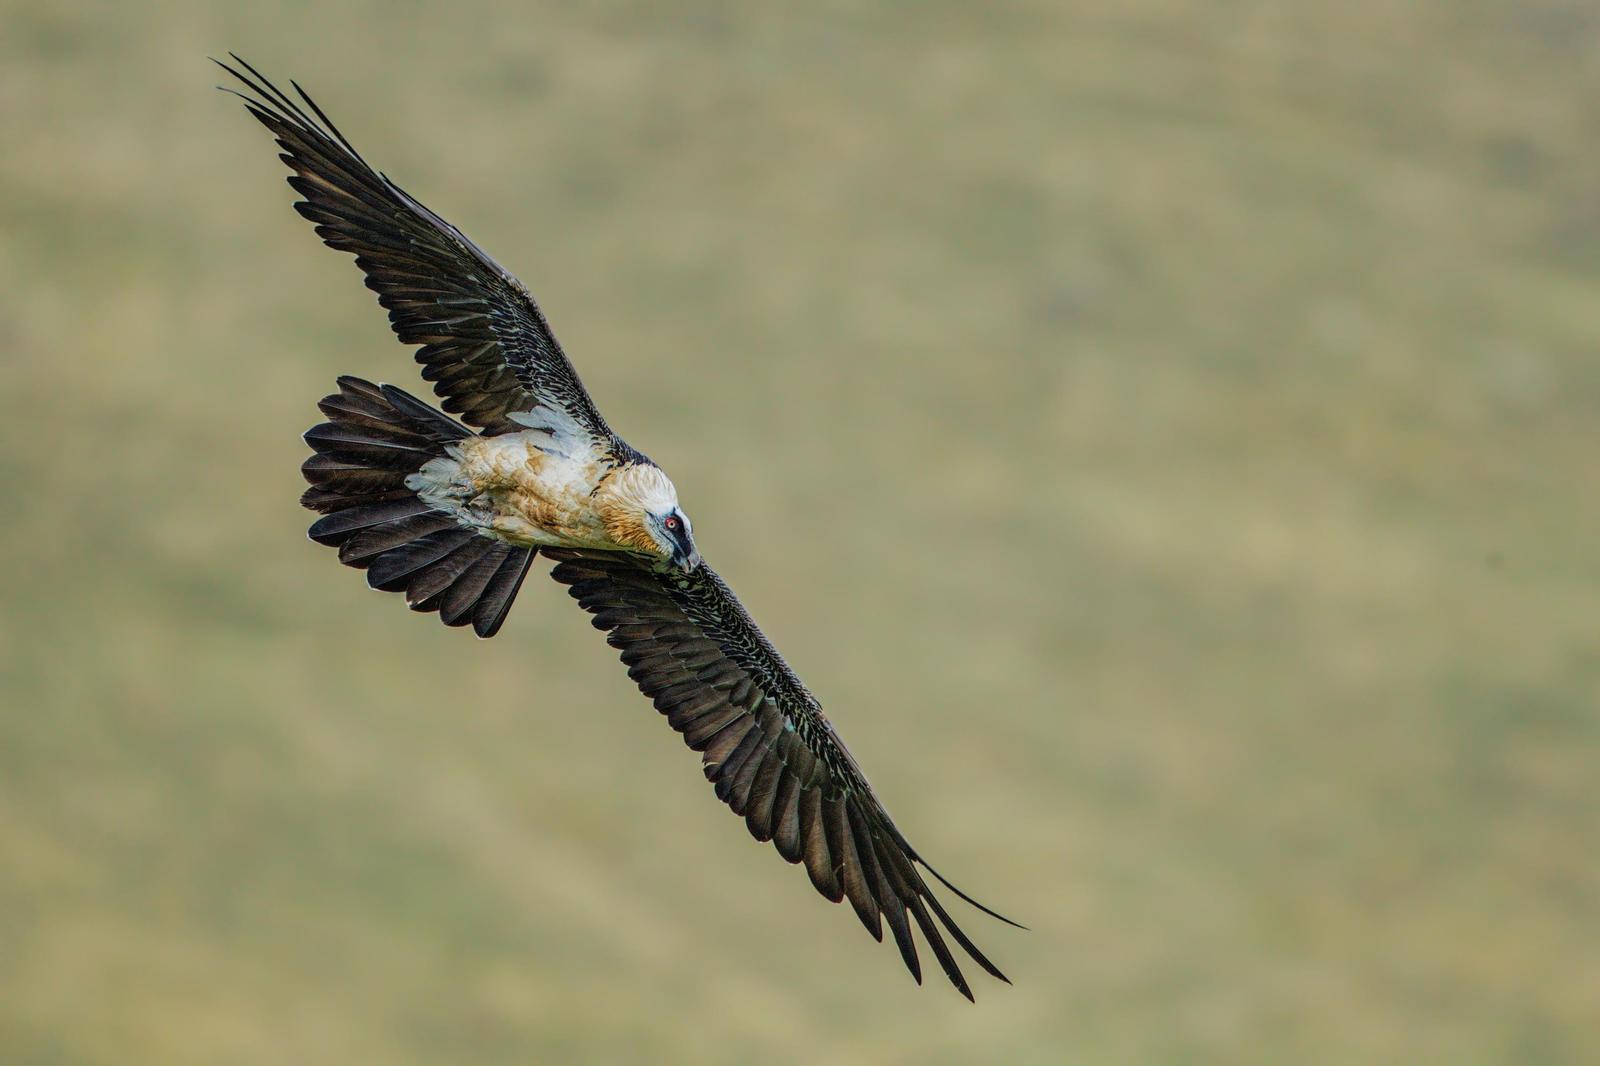 Bearded Vulture (Eurasian) Photo by Jeff Schwilk